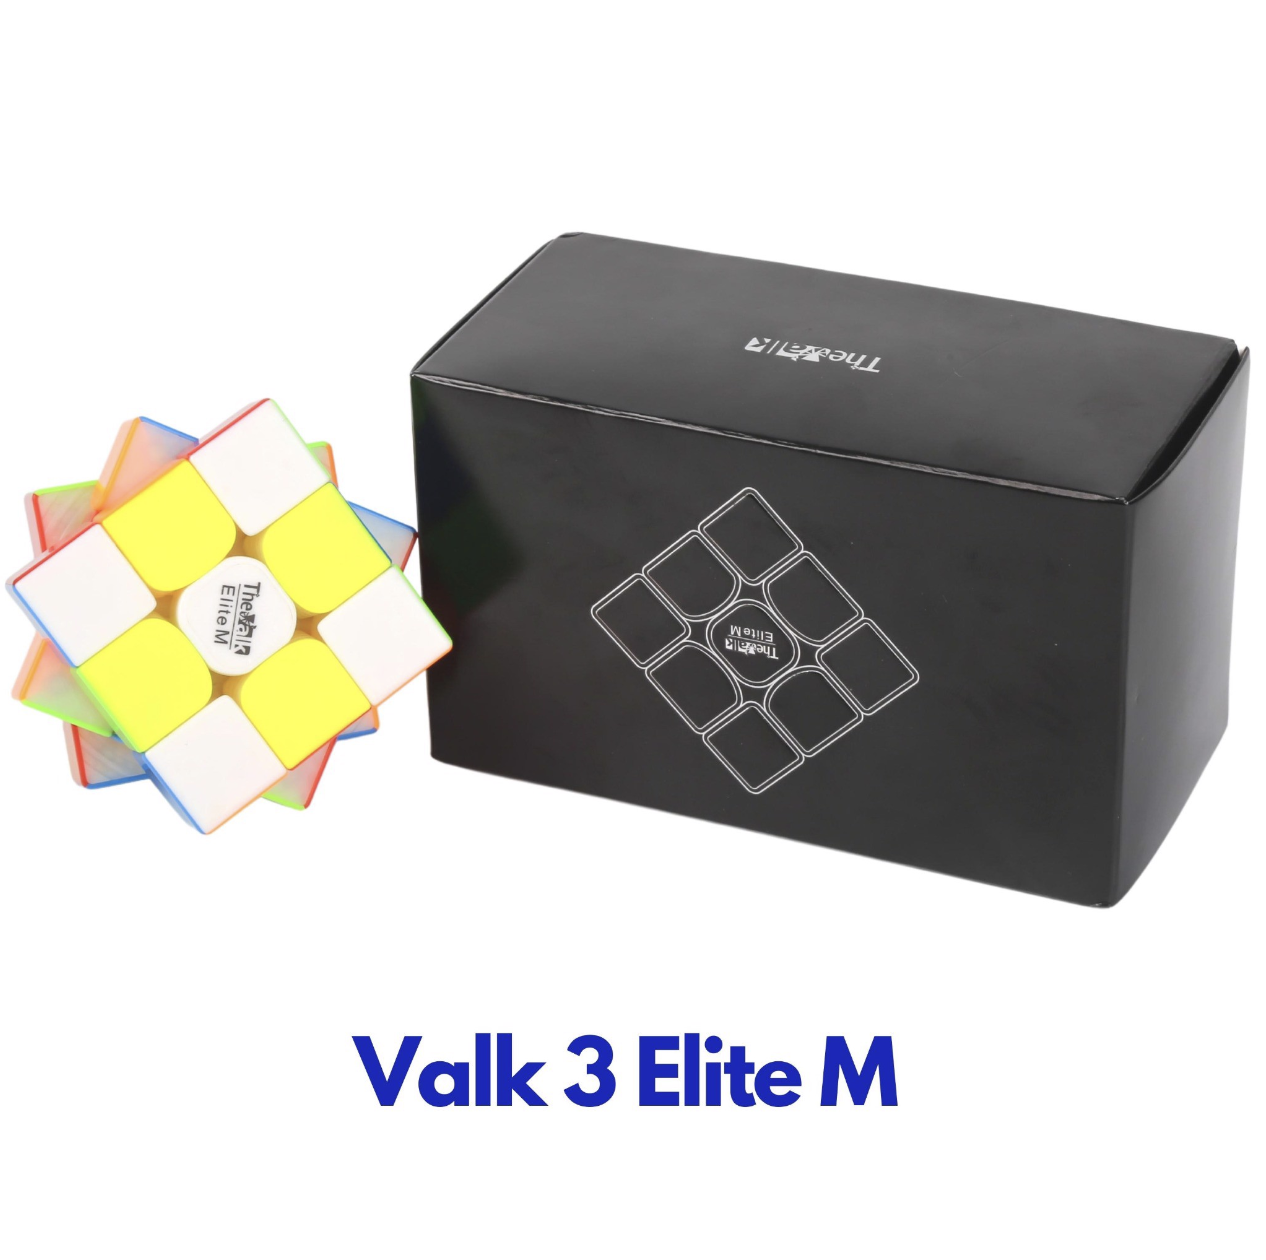 Valk 3 Elite M 2019 và câu chuyện chưa kể